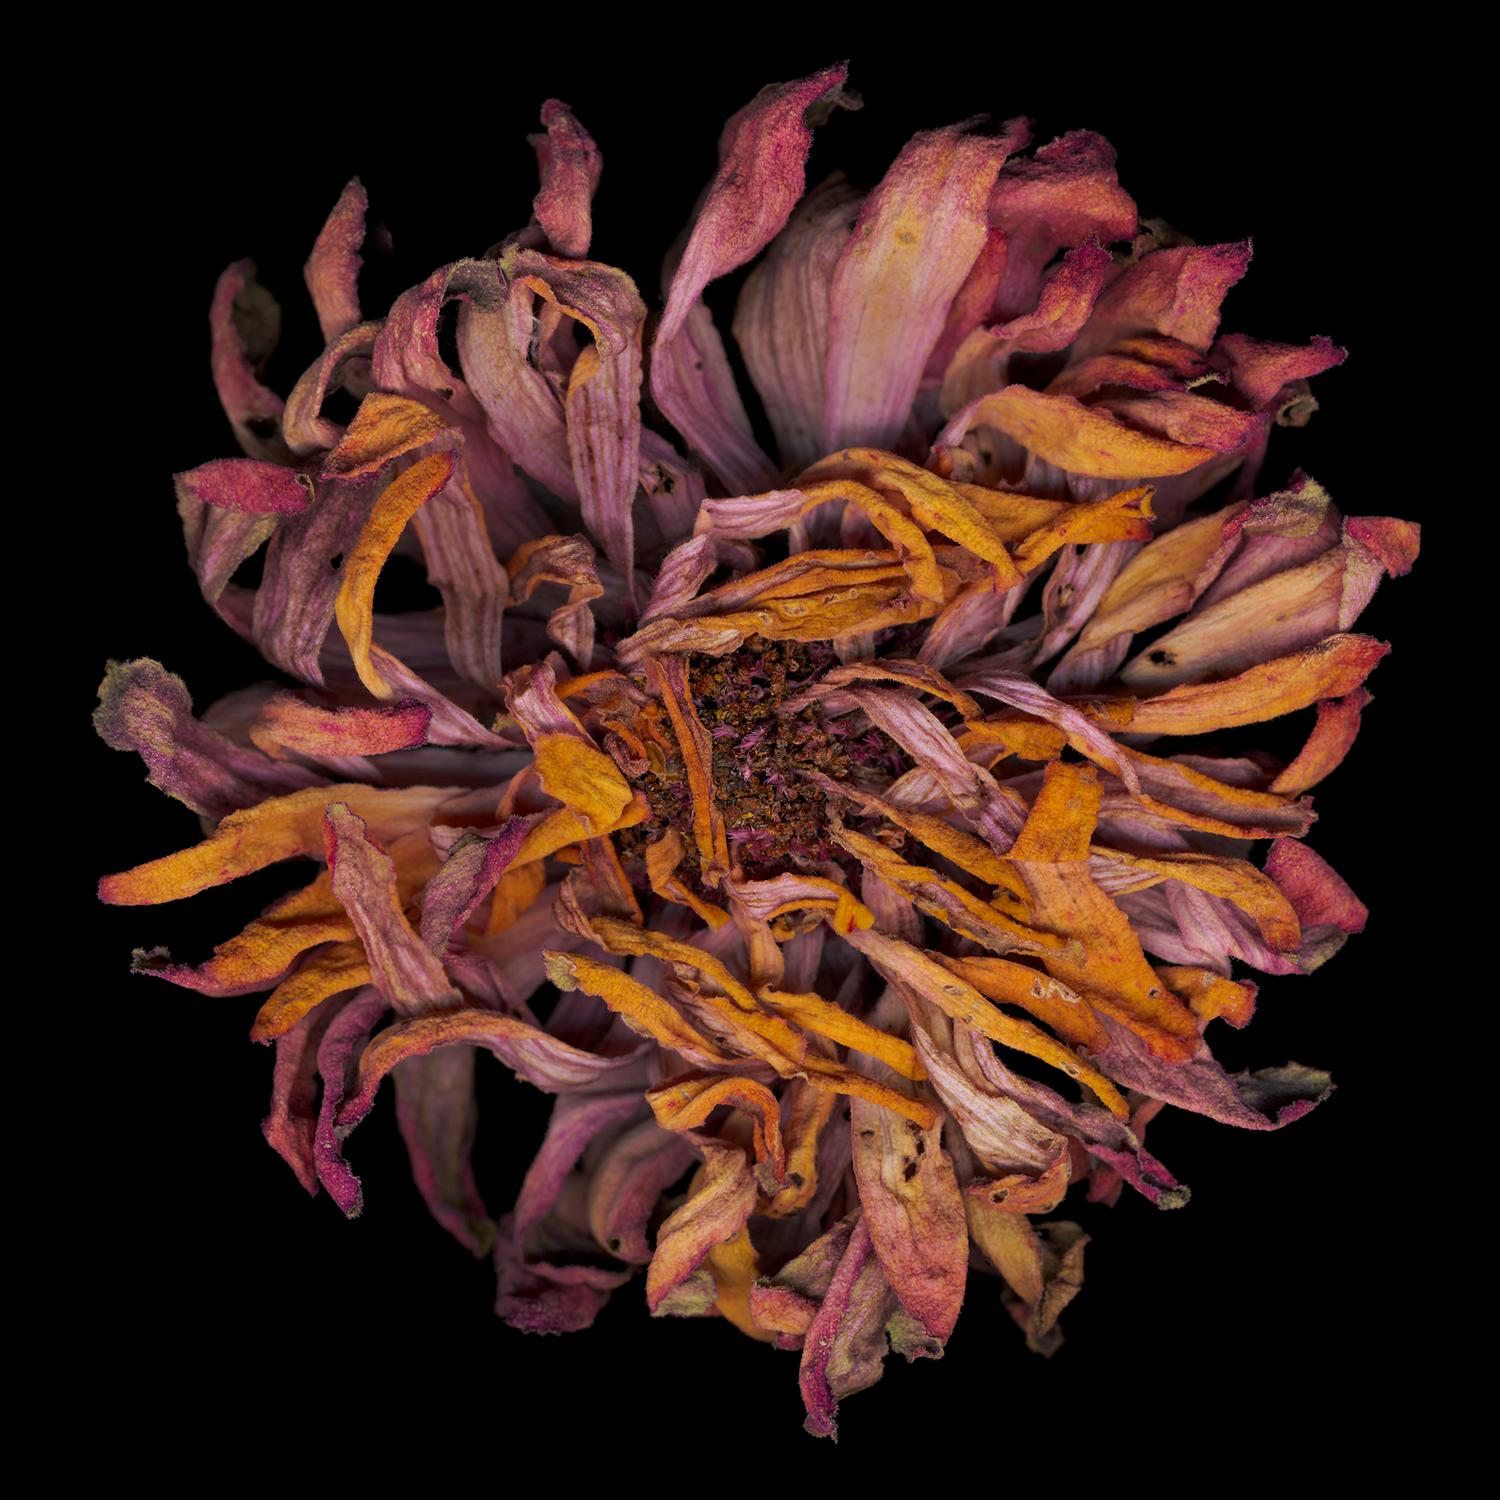 Chad Kleitsch – Blume ohne Titel # 23, Fotografie 2002, Nachdruck